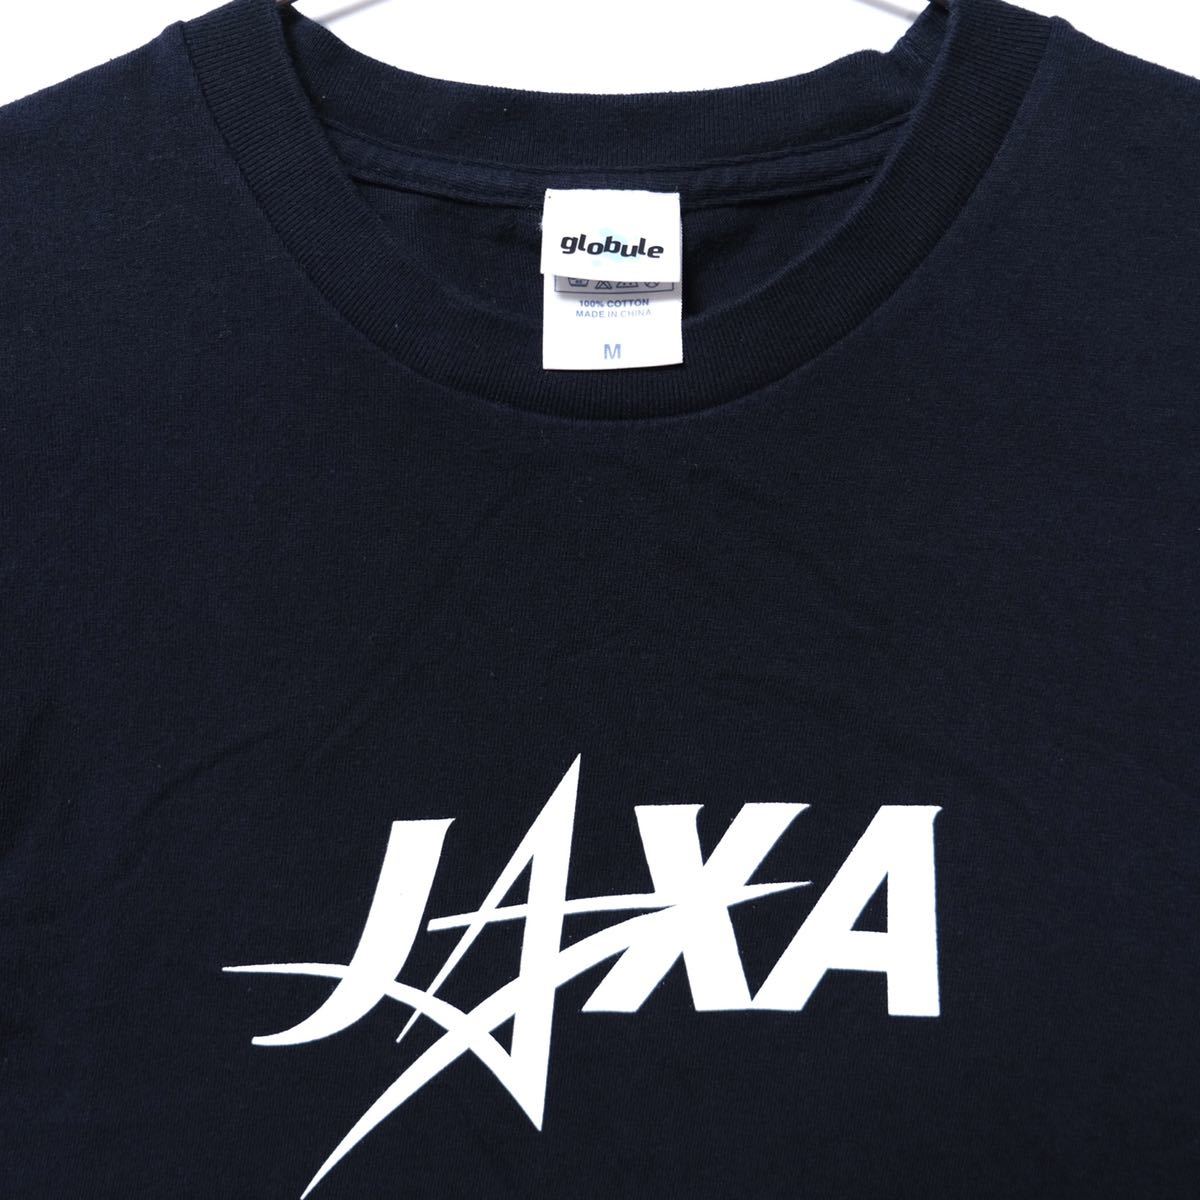 【送料無料】宇宙航空研究開発機構(JAXA)/半袖Tシャツ/ロゴ/globule/ネイビー/Mサイズ_画像2